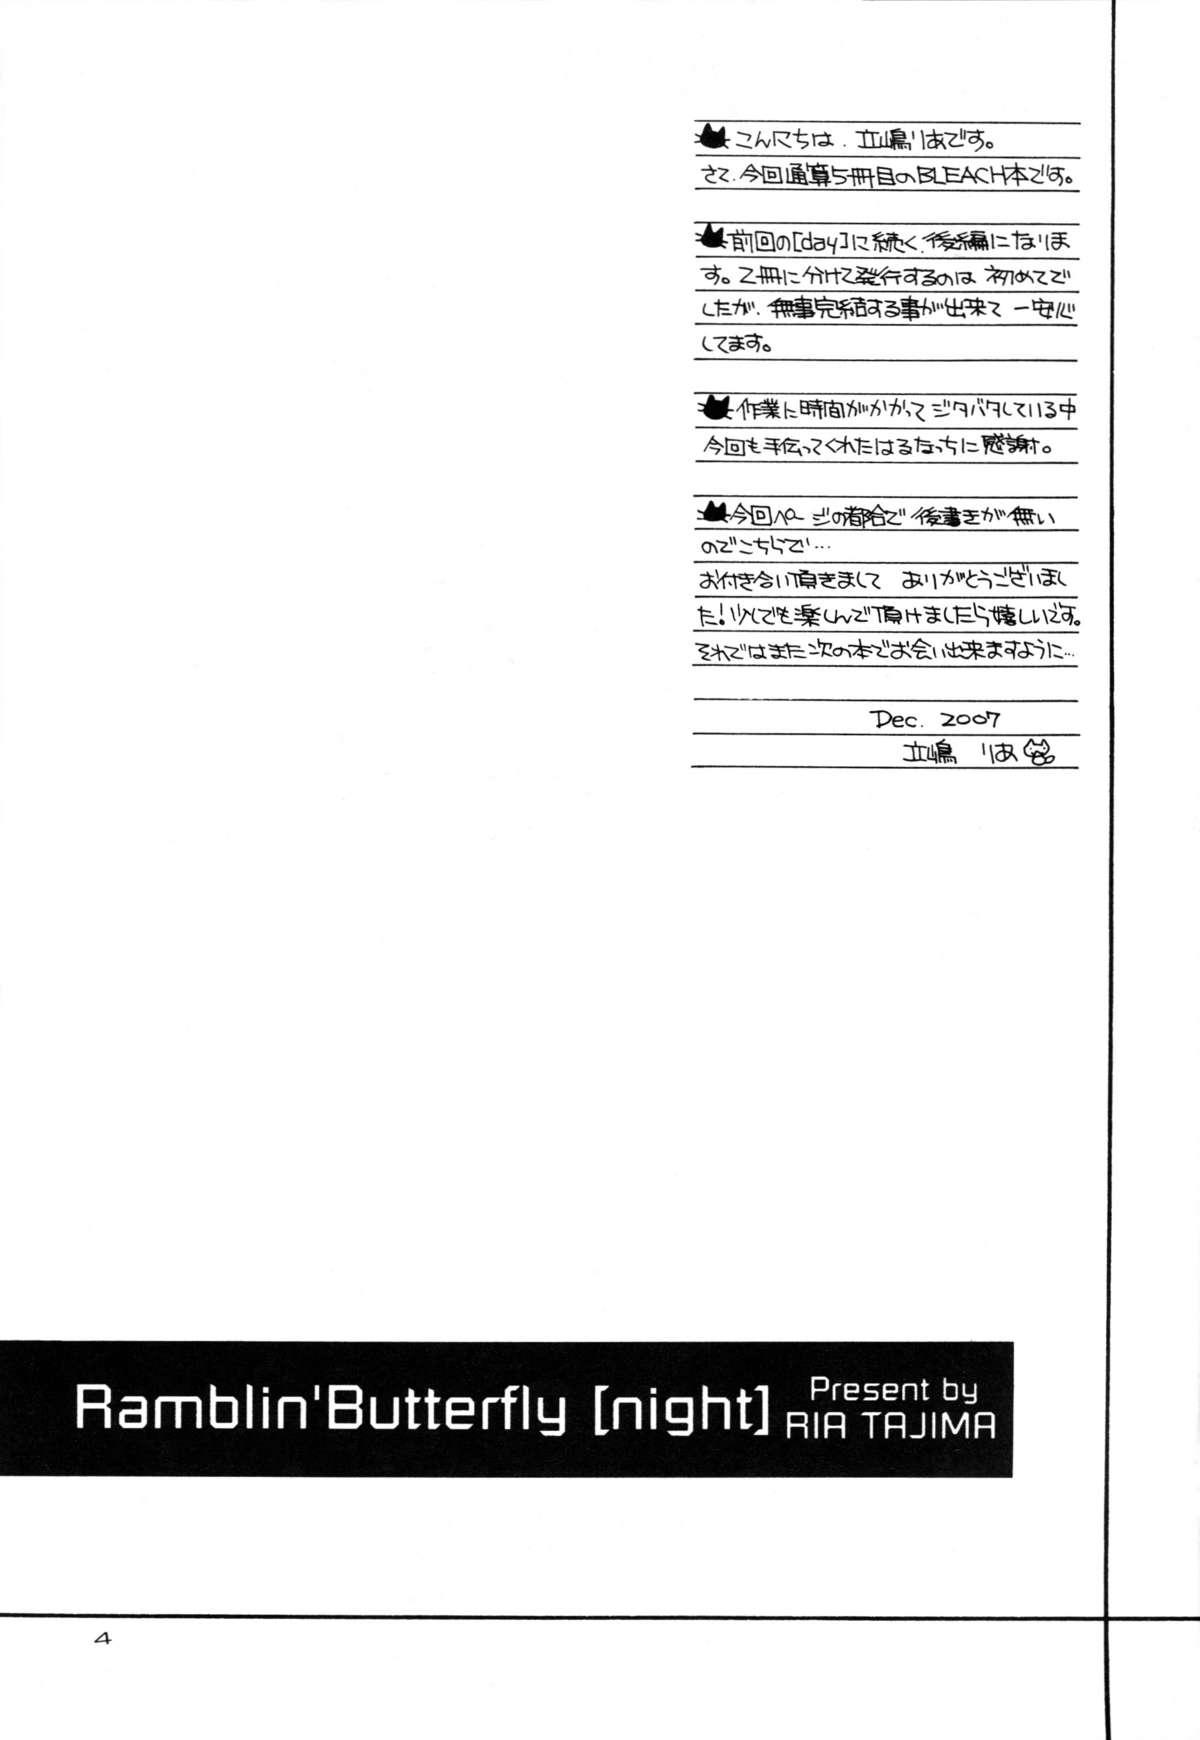 Ramblin' Butterfly 2